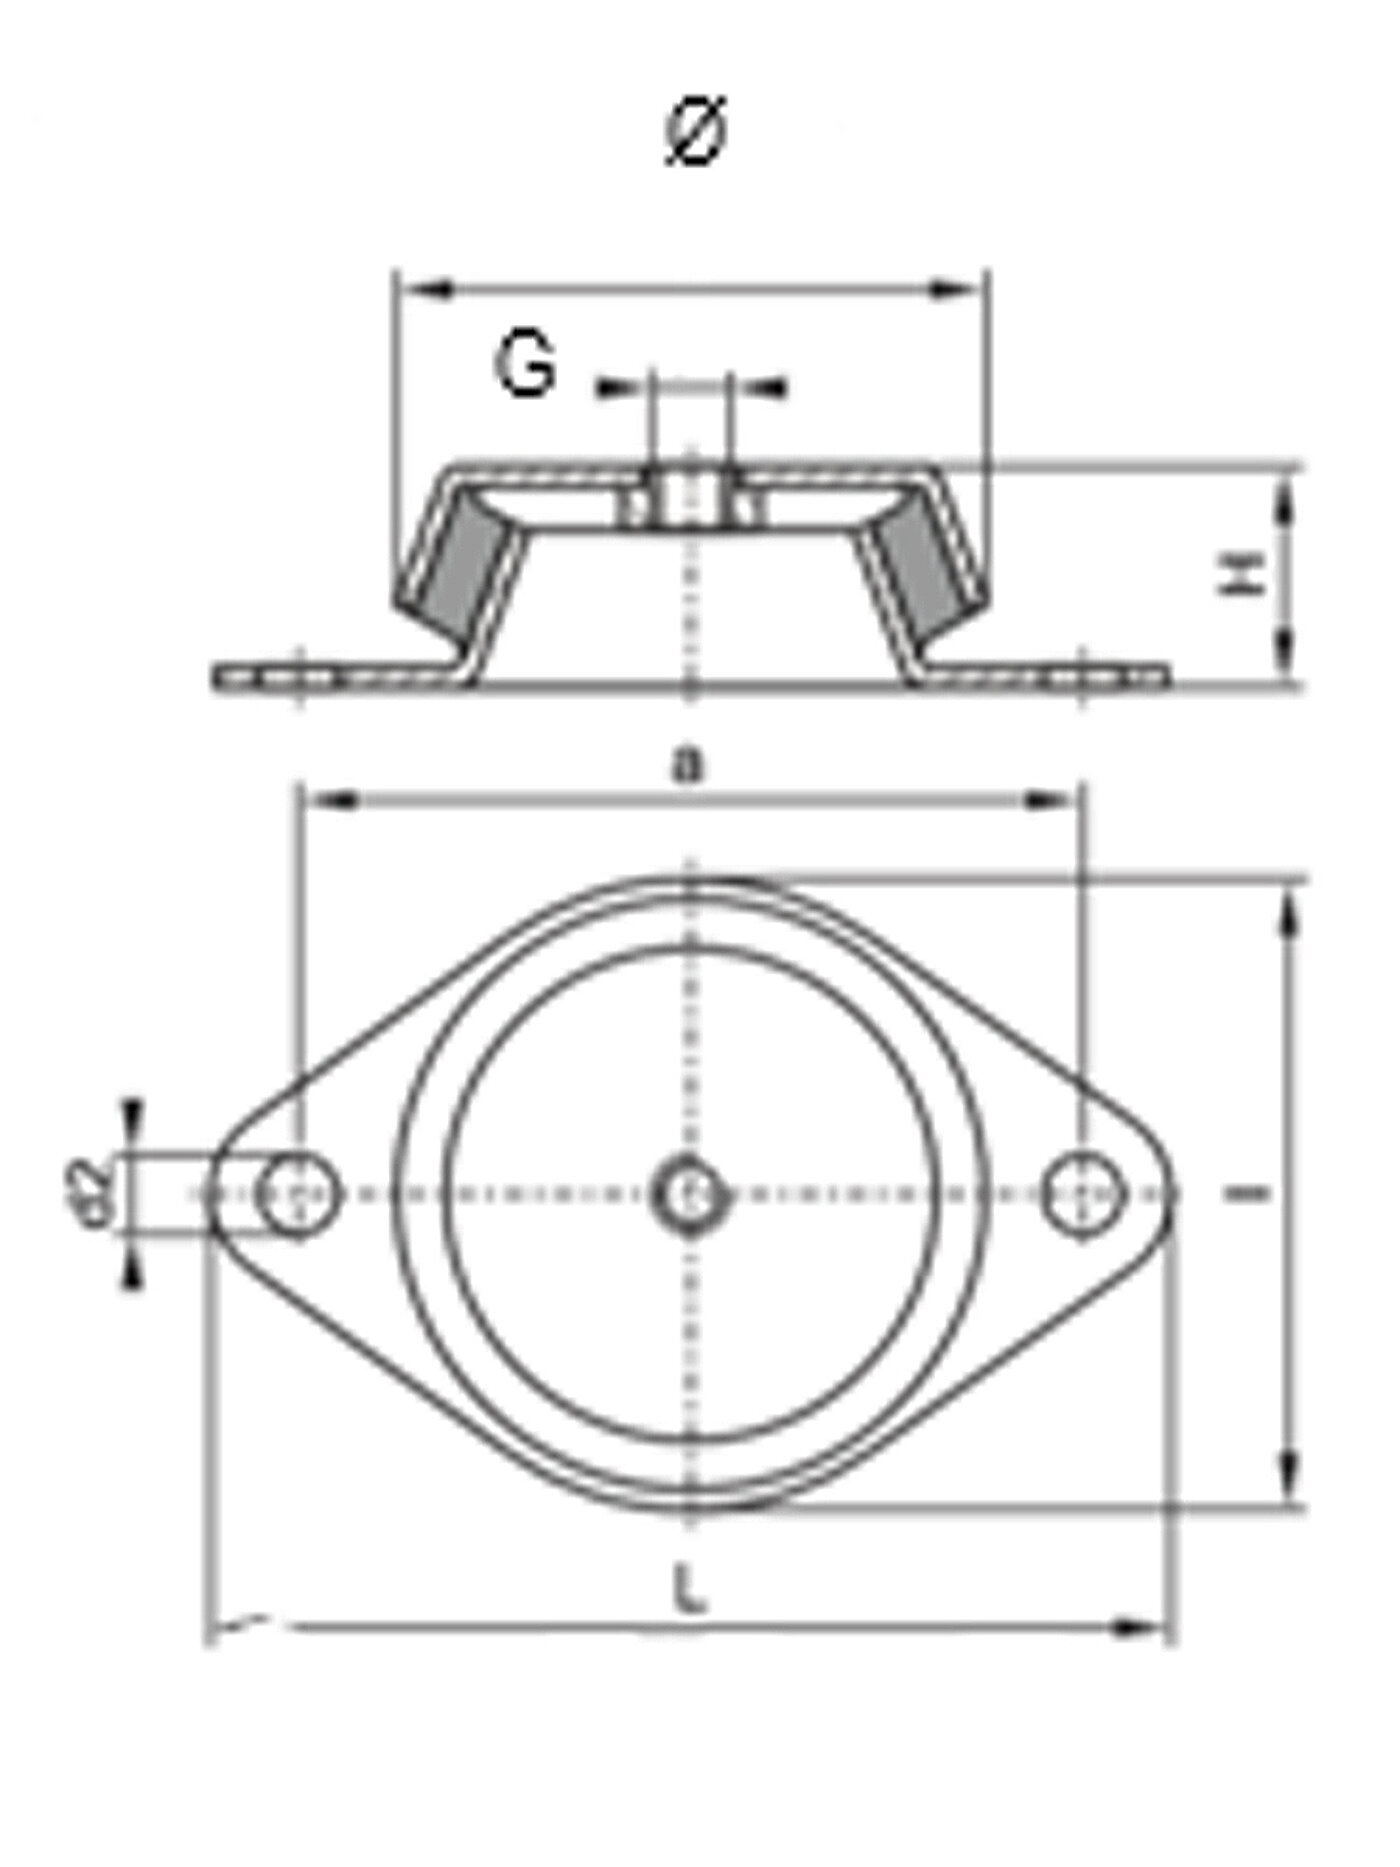 schematische Zeichnung eines Schwingungsdämpfers aus Metall mit rautenförmiger Bodenplatte, zwei Rundlöchern zur Bodenbefestigung, einer glockenförmigen Metallkappe mit Einschraubgewinde und dazwischen einvulkanisiertem Elastomer, in der Querschnitt-Seitenansicht und Draufsicht